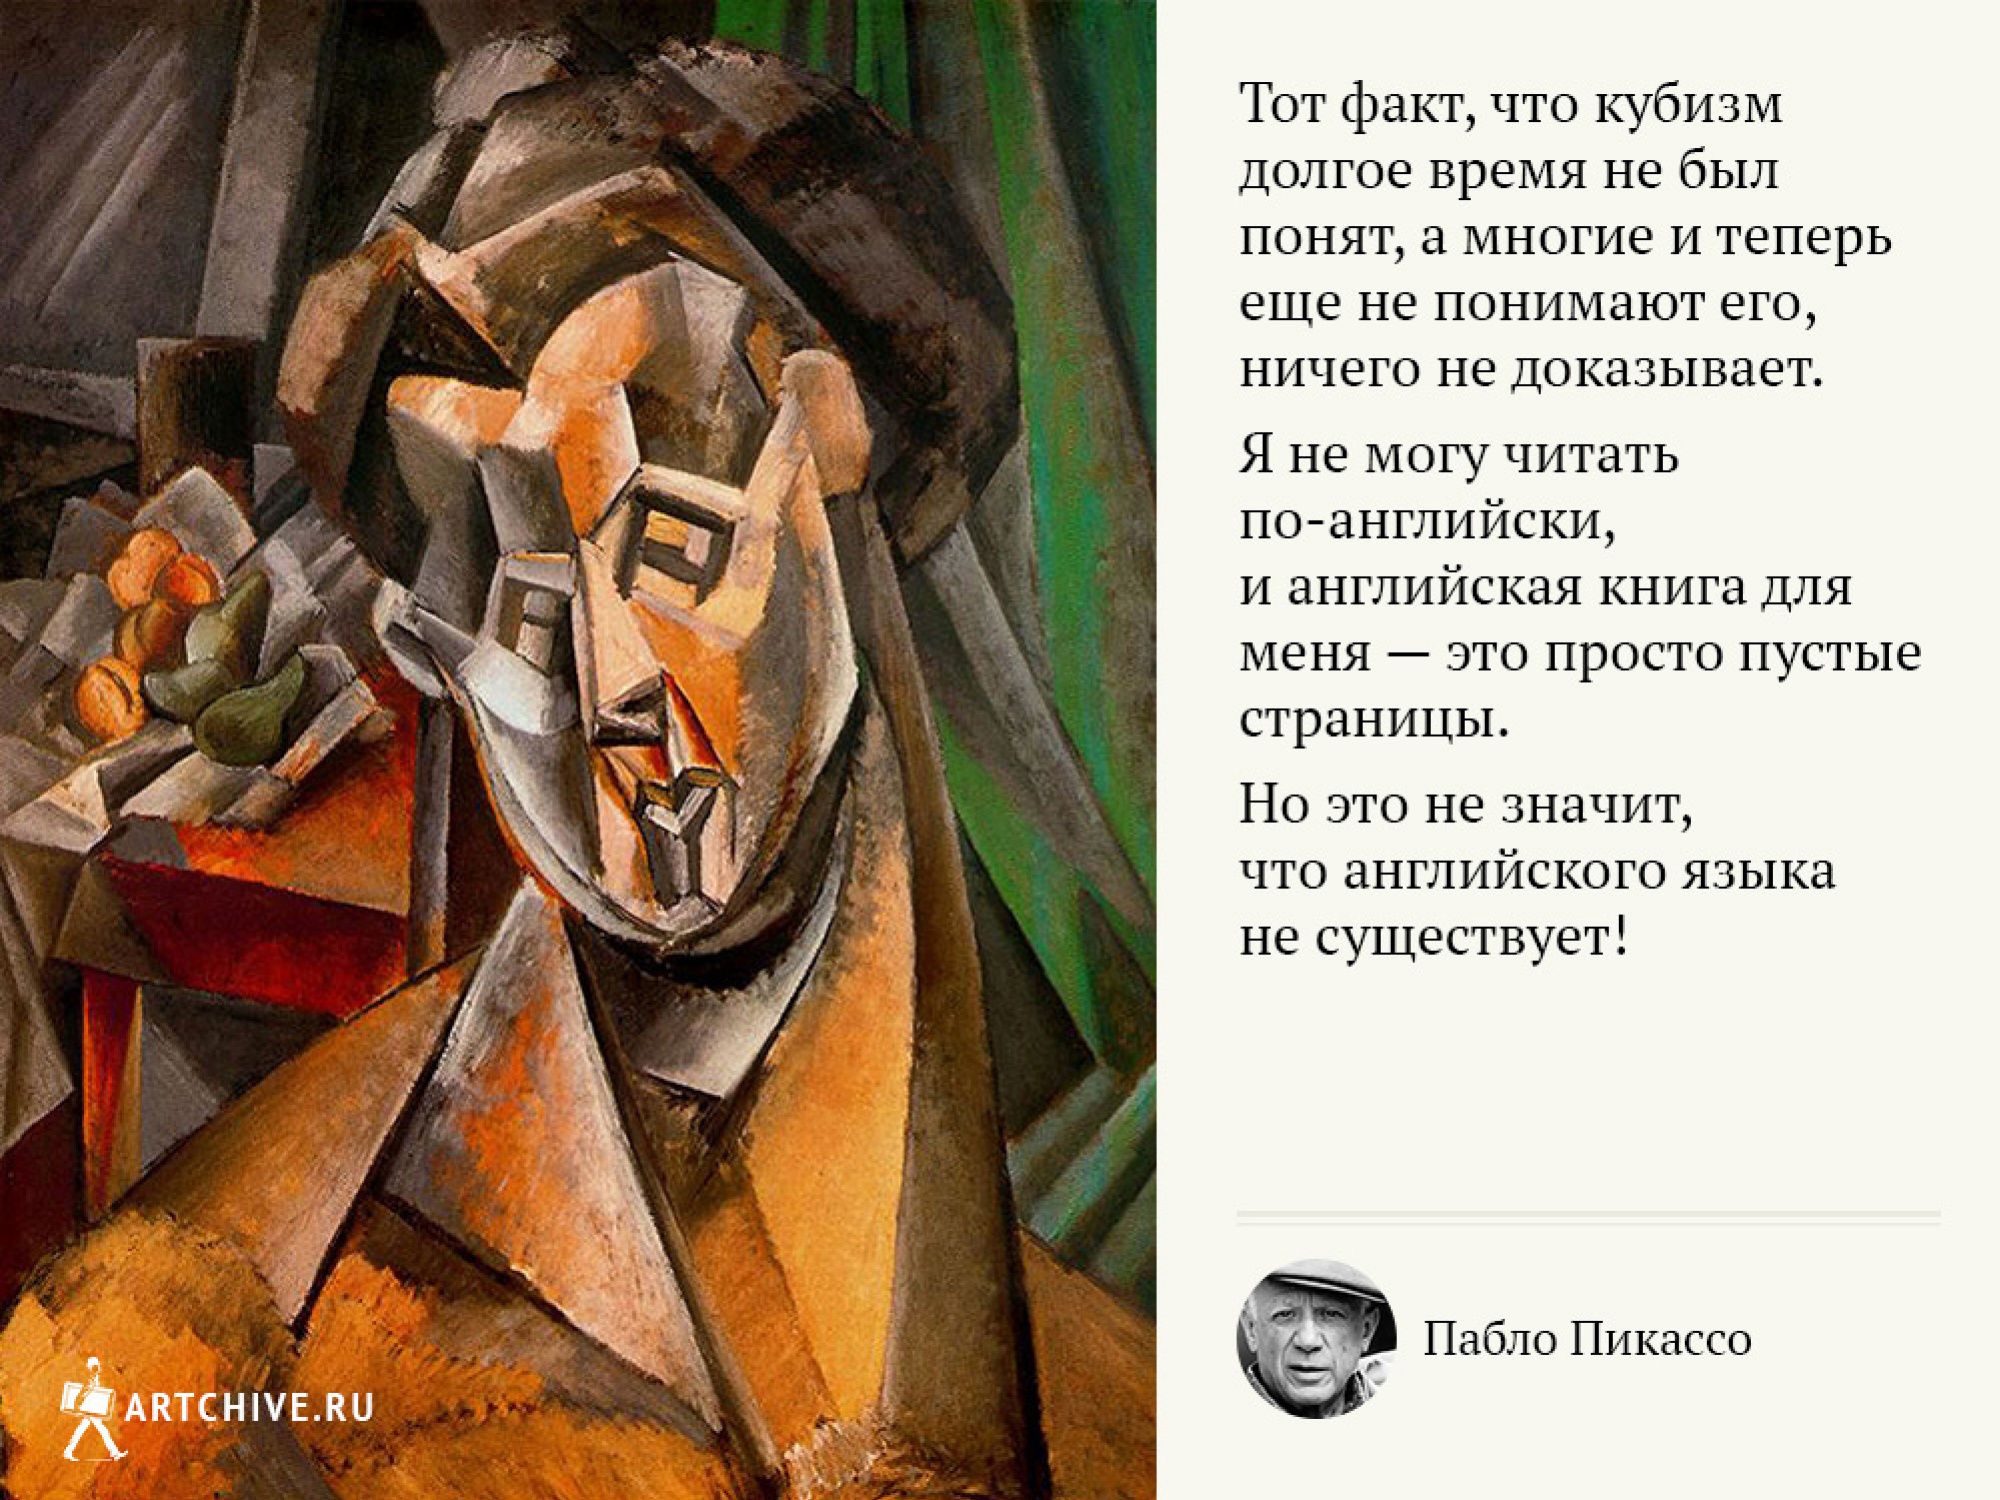 20 цитат Пабло Пикассо о том, как быть художником по жизни